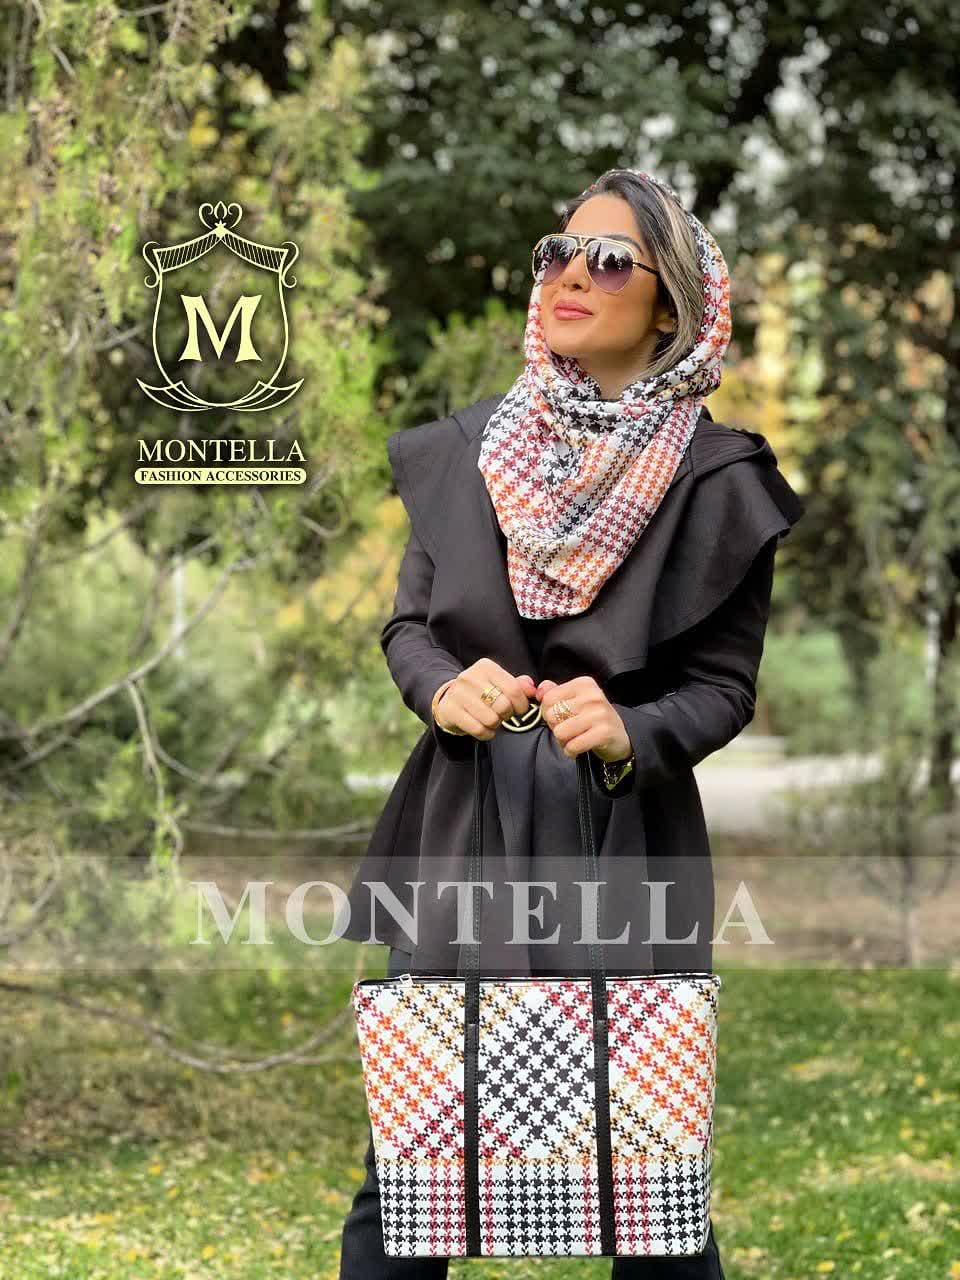 ست کیف و روسری و شال زنانه باکیفیت مدل پیچازی رنگ کرم با کیف مستطیلی بزرگ روسری نخی و ارسال رایگان کد mo454